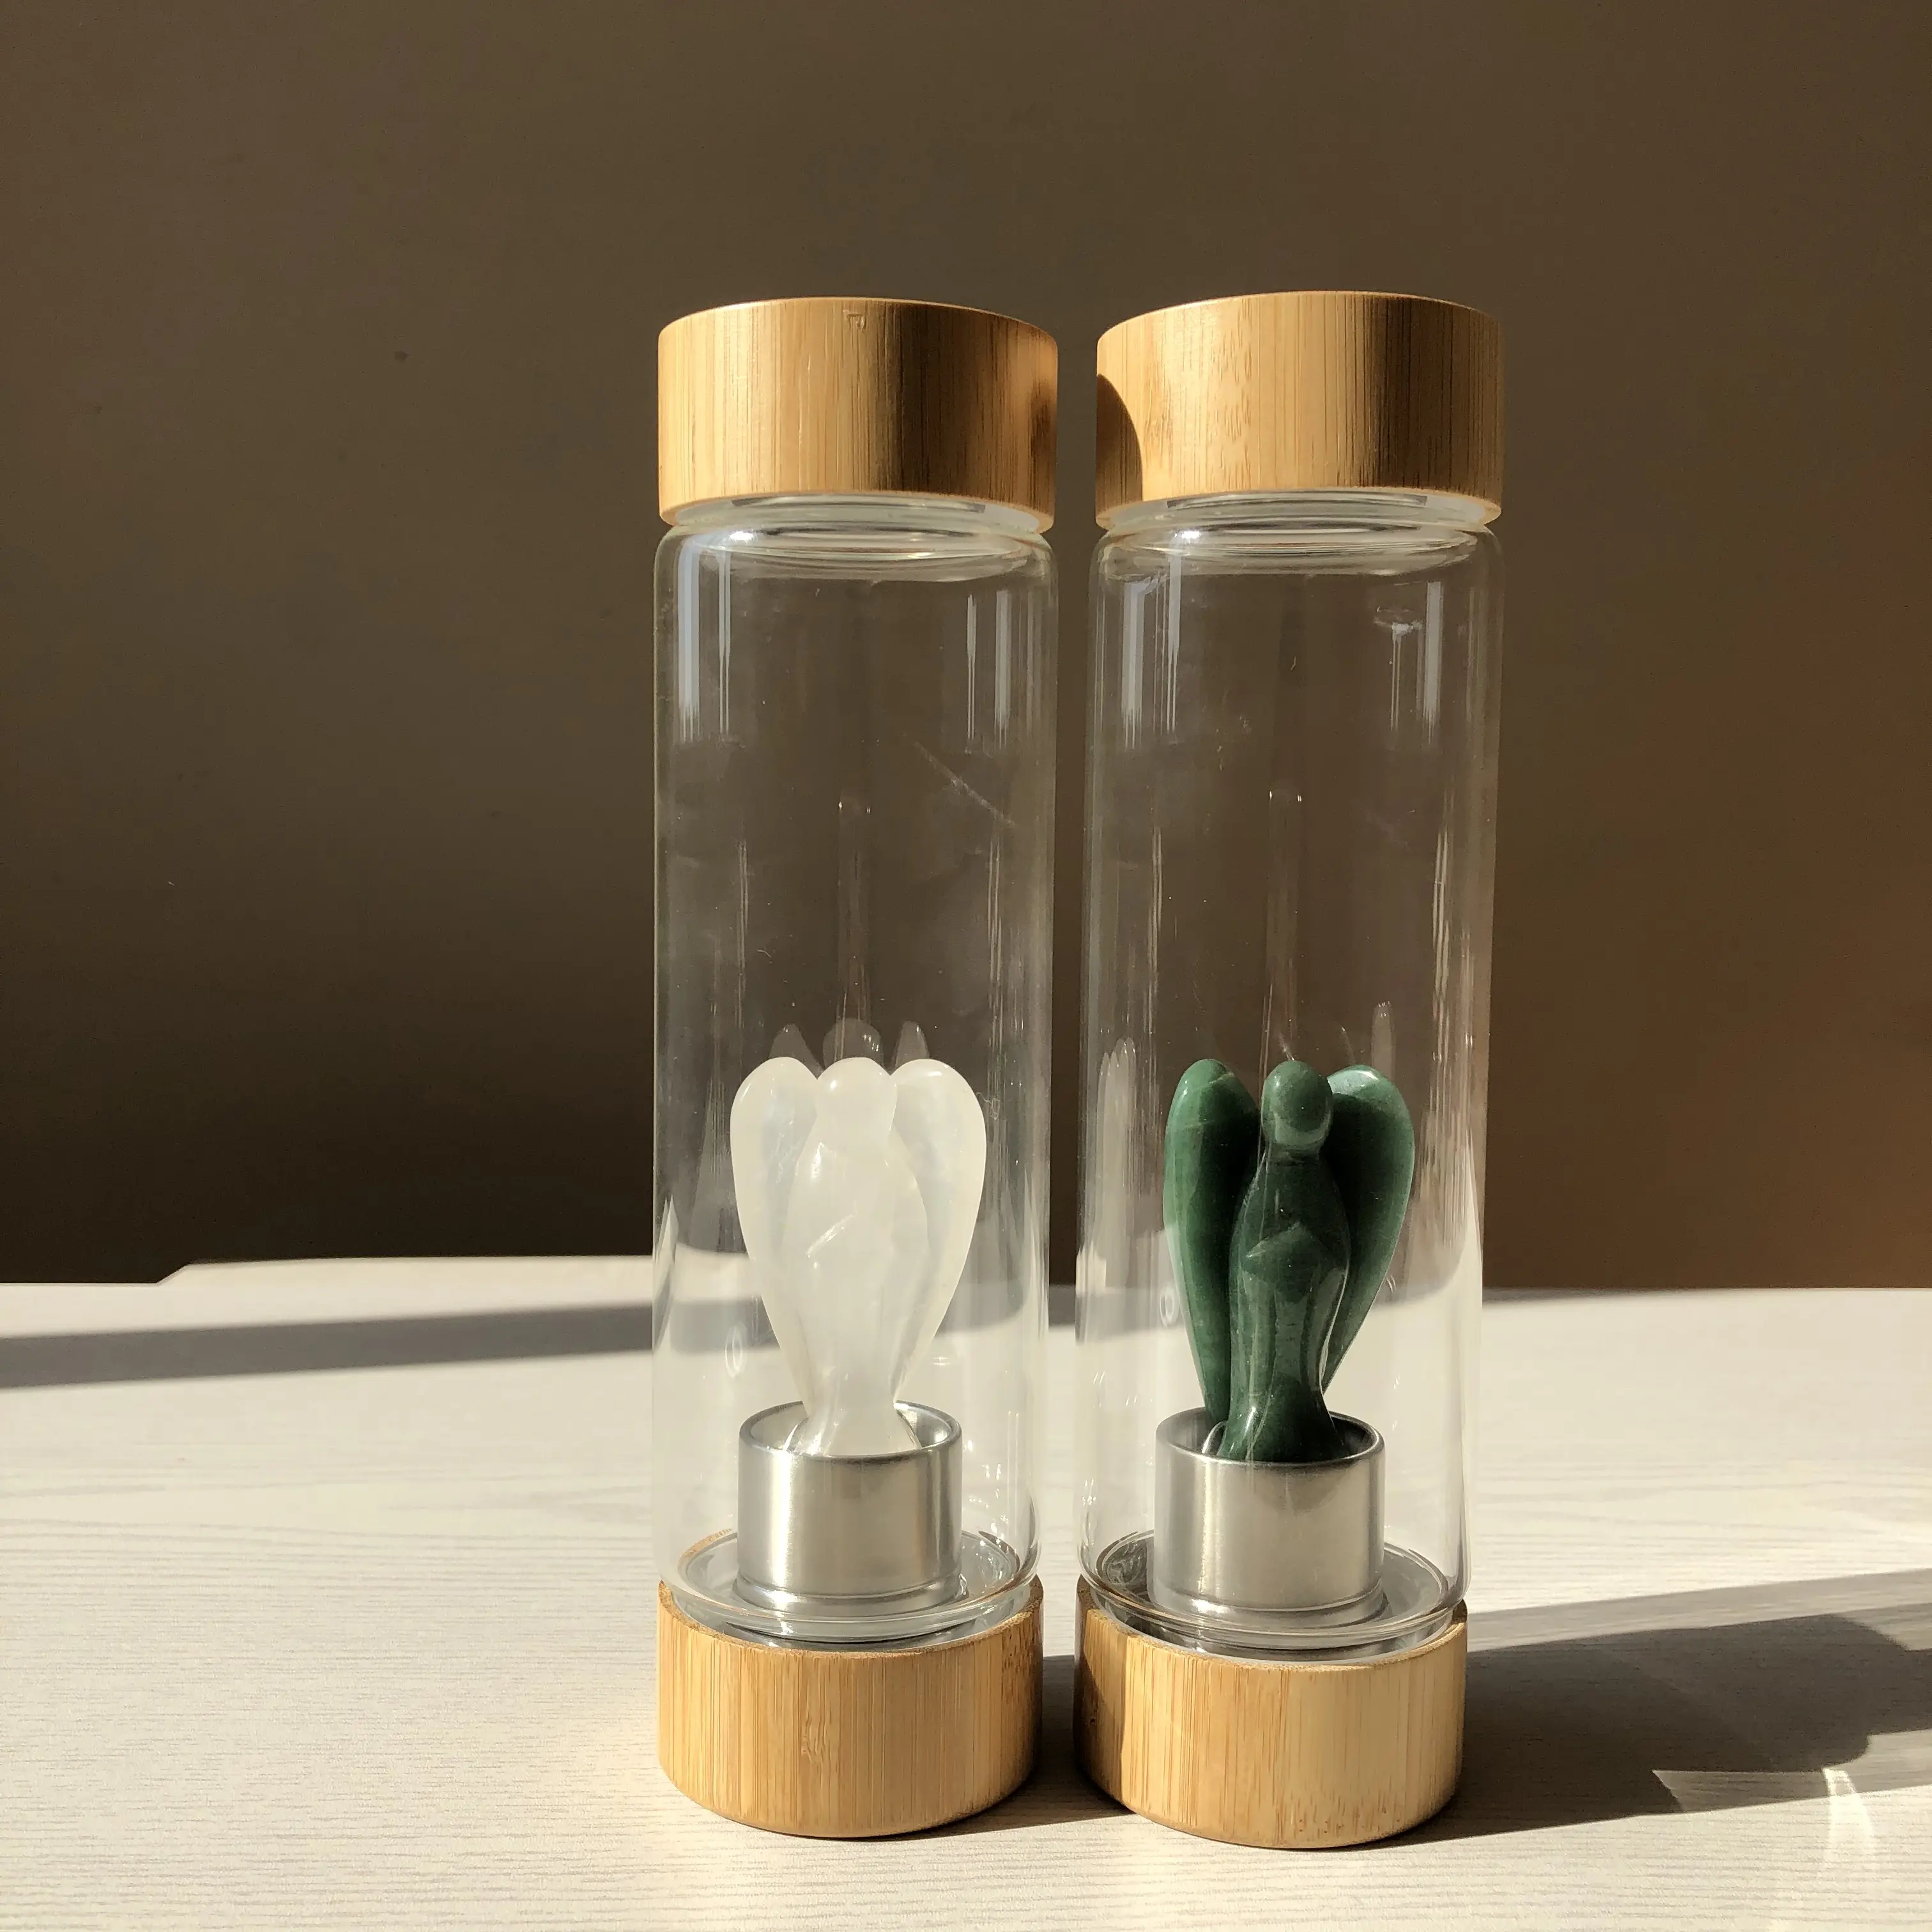 Großhandel Elixier Engel Kristall Wasser flasche Designed Fitness Natur kristall Heils tein Edelstein Wasser flasche Mit Bambus deckel